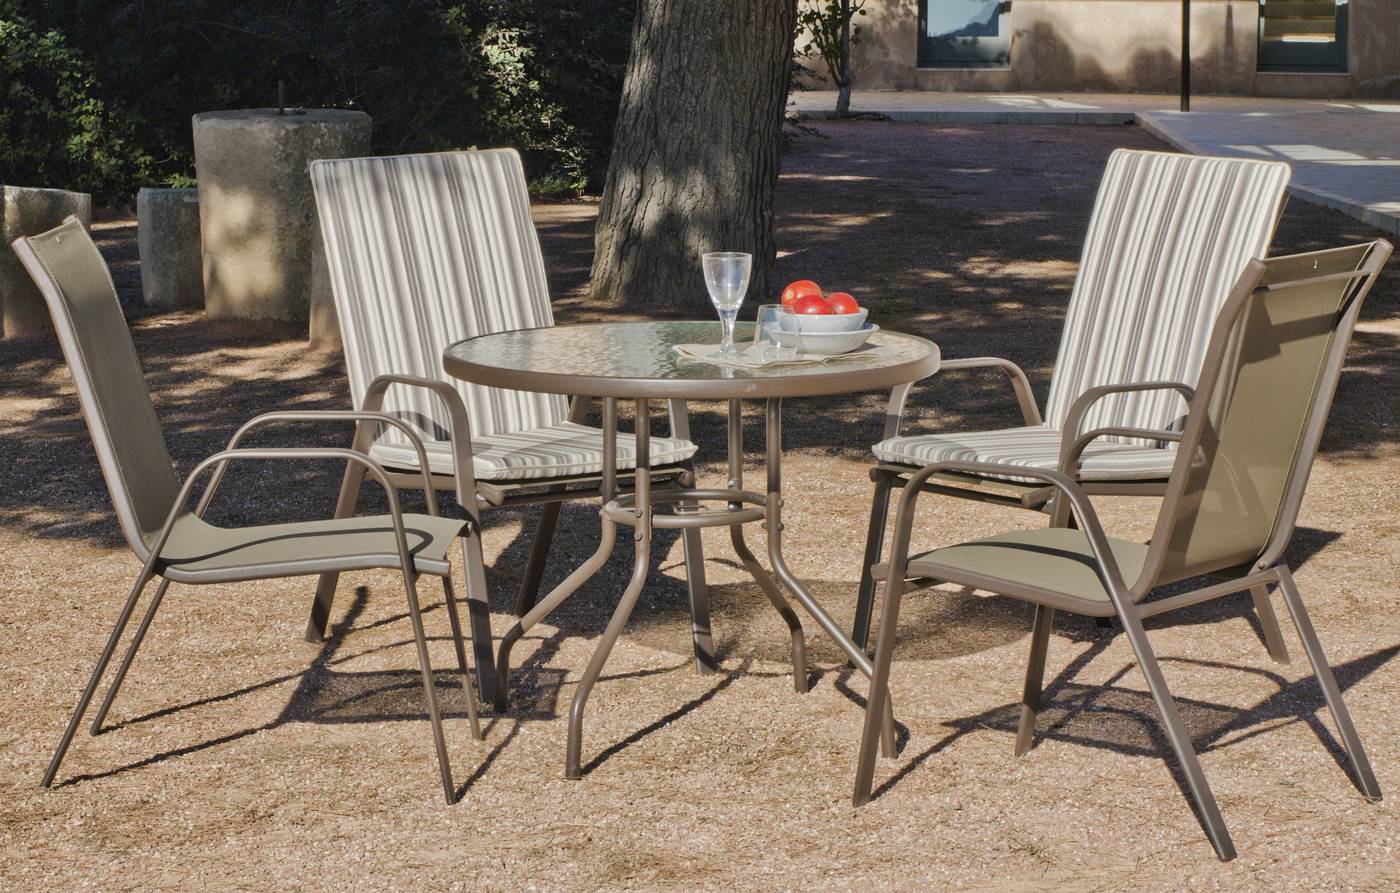 Set Acero Macao-90 - Conjunto de acero color bronce: mesa redonda de 90 cm. Con tapa de cristal templado + 4 sillones apilables de acero y textilen